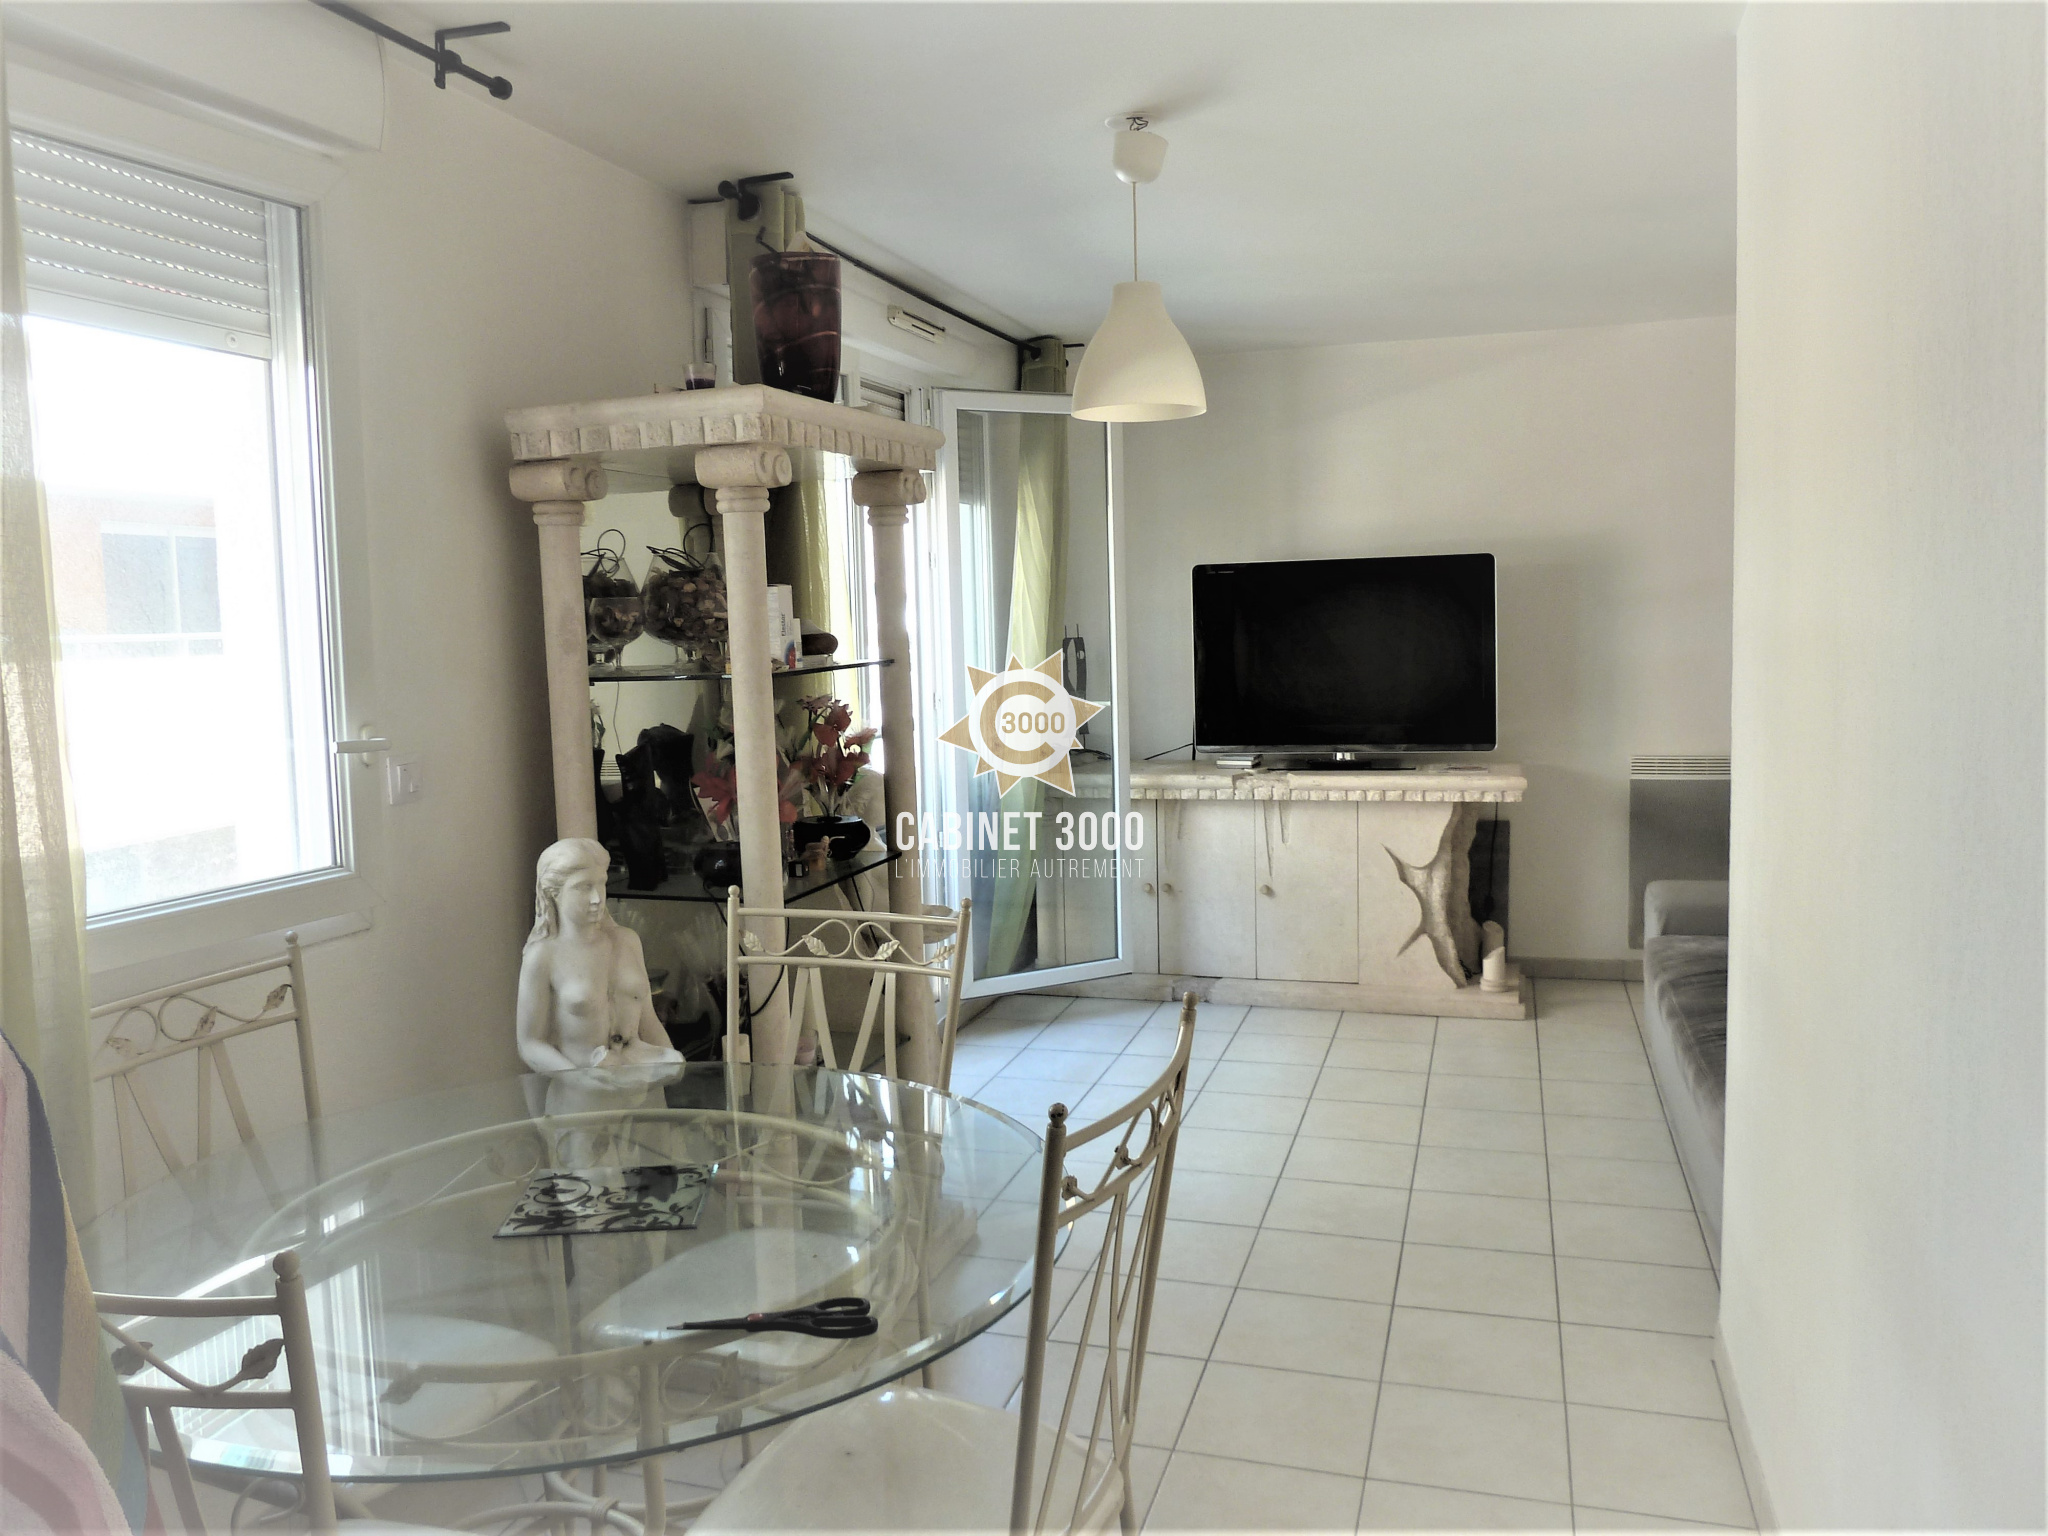 Vente Appartement 46m² 2 Pièces à La Seyne-sur-Mer (83500) - Cabinet 3000